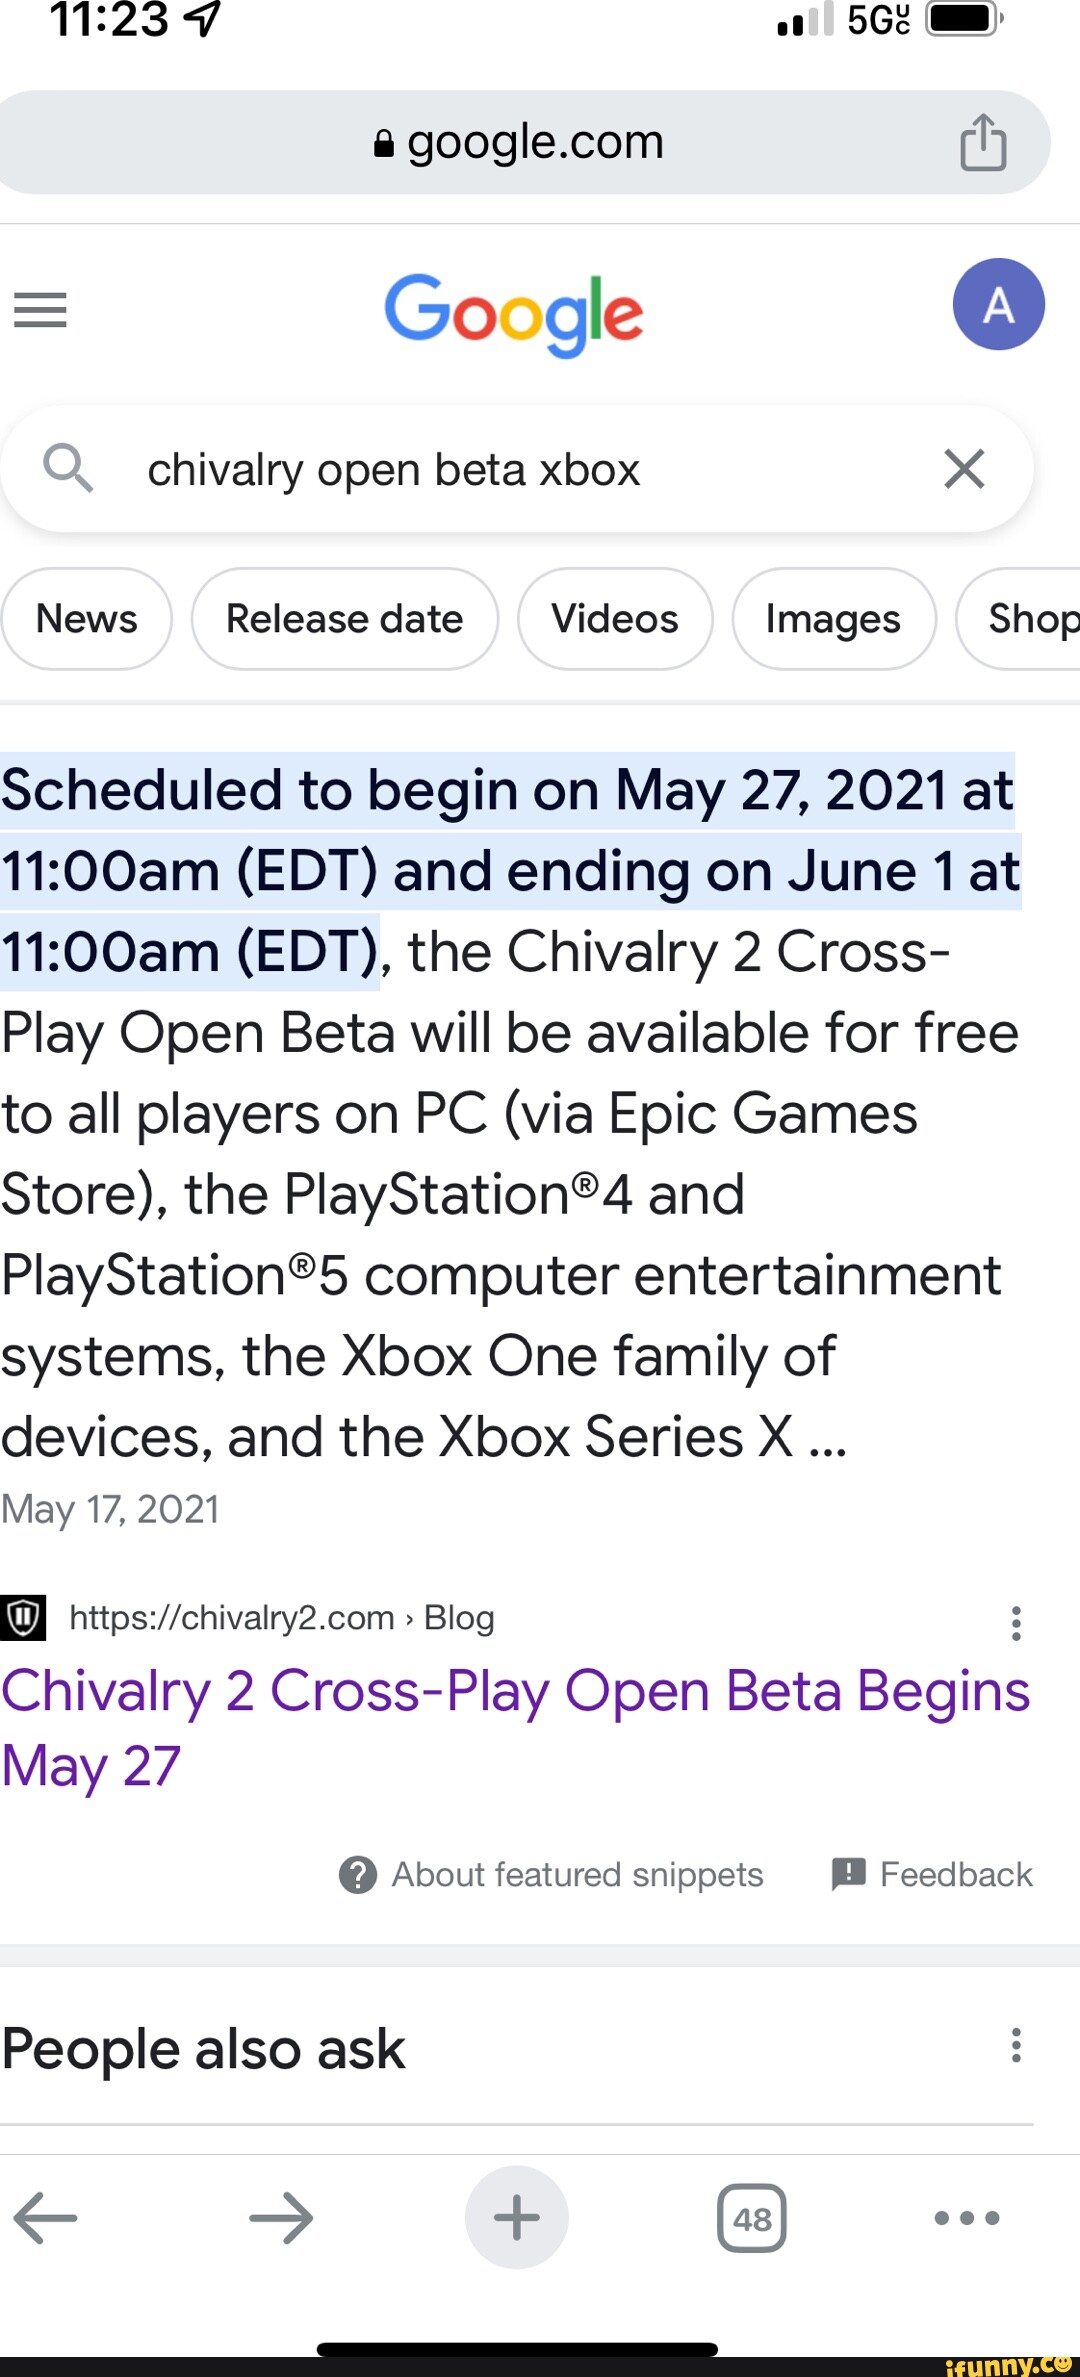 Chivalry 2 Cross-Play Open Beta Begins May 27 - Chivalry 2